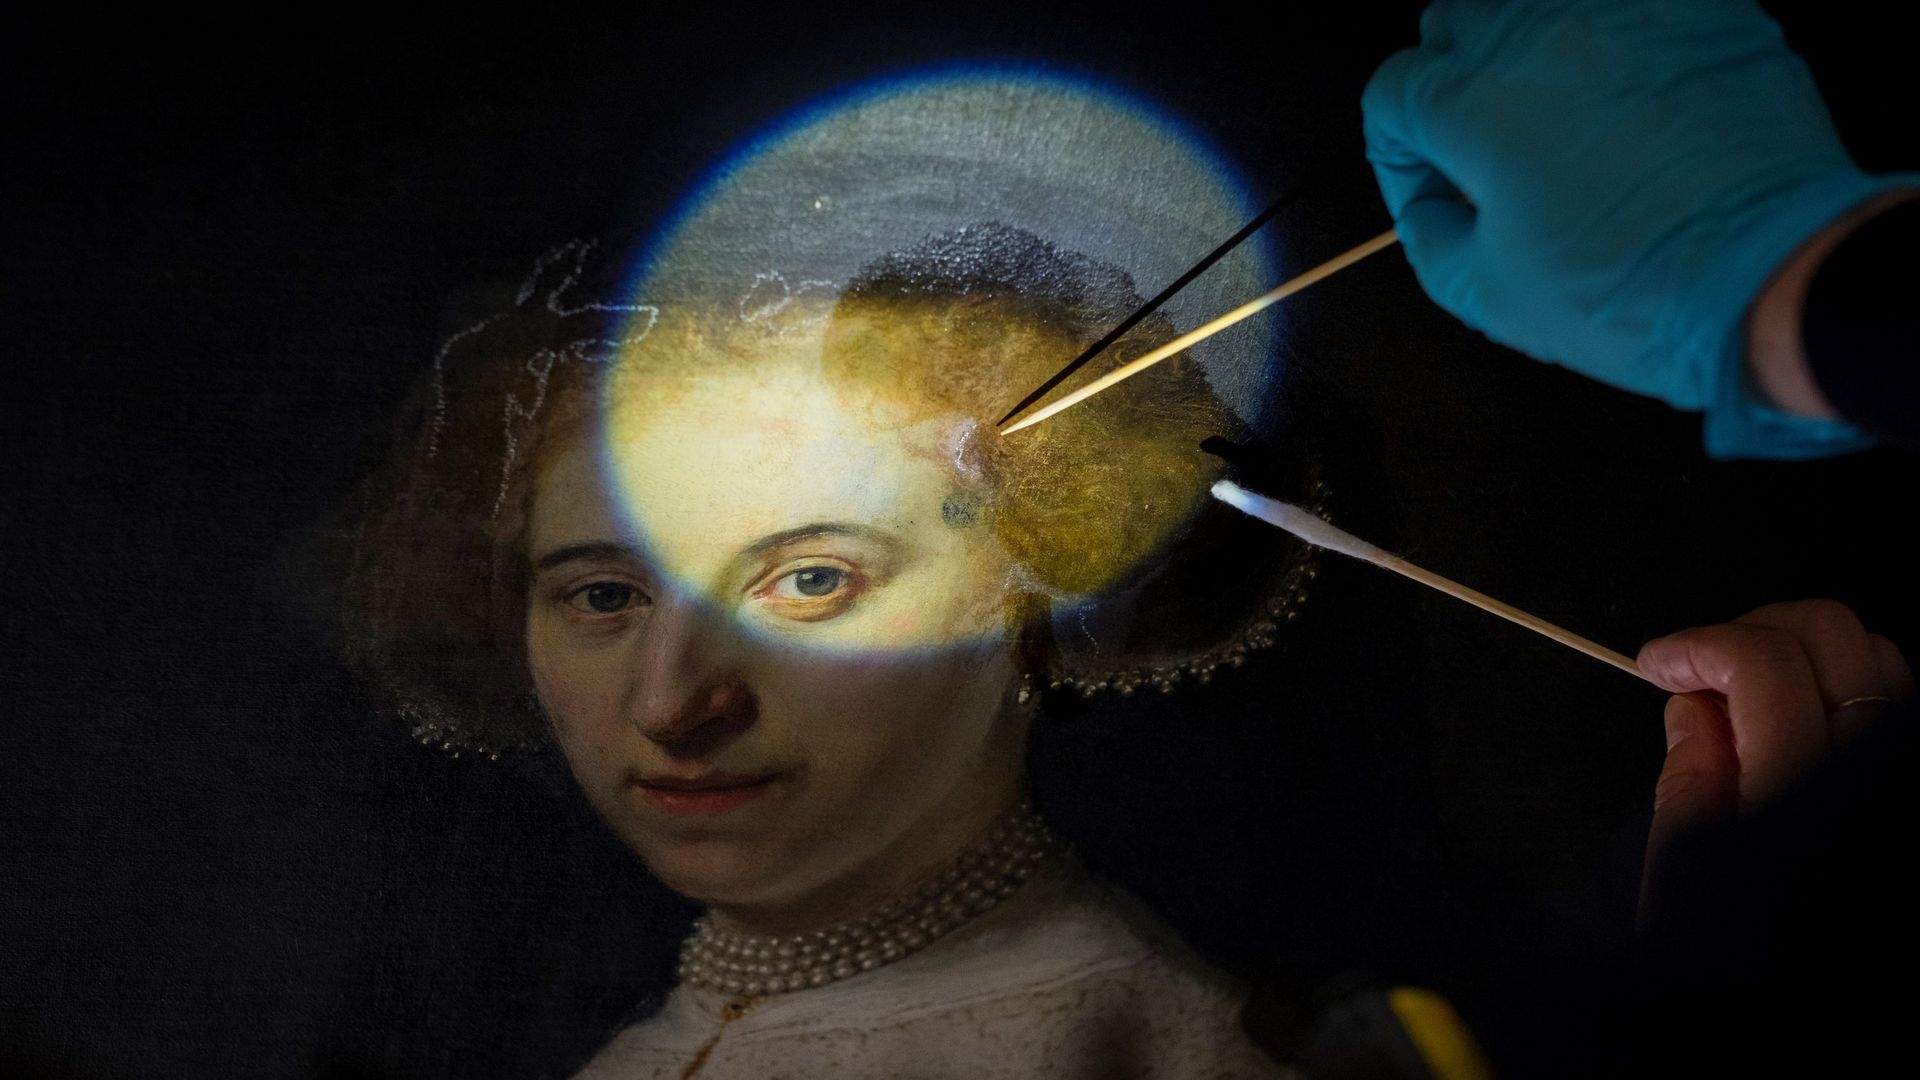 Un double portrait de Rembrandt renové par une équipe franco-néerlandaise